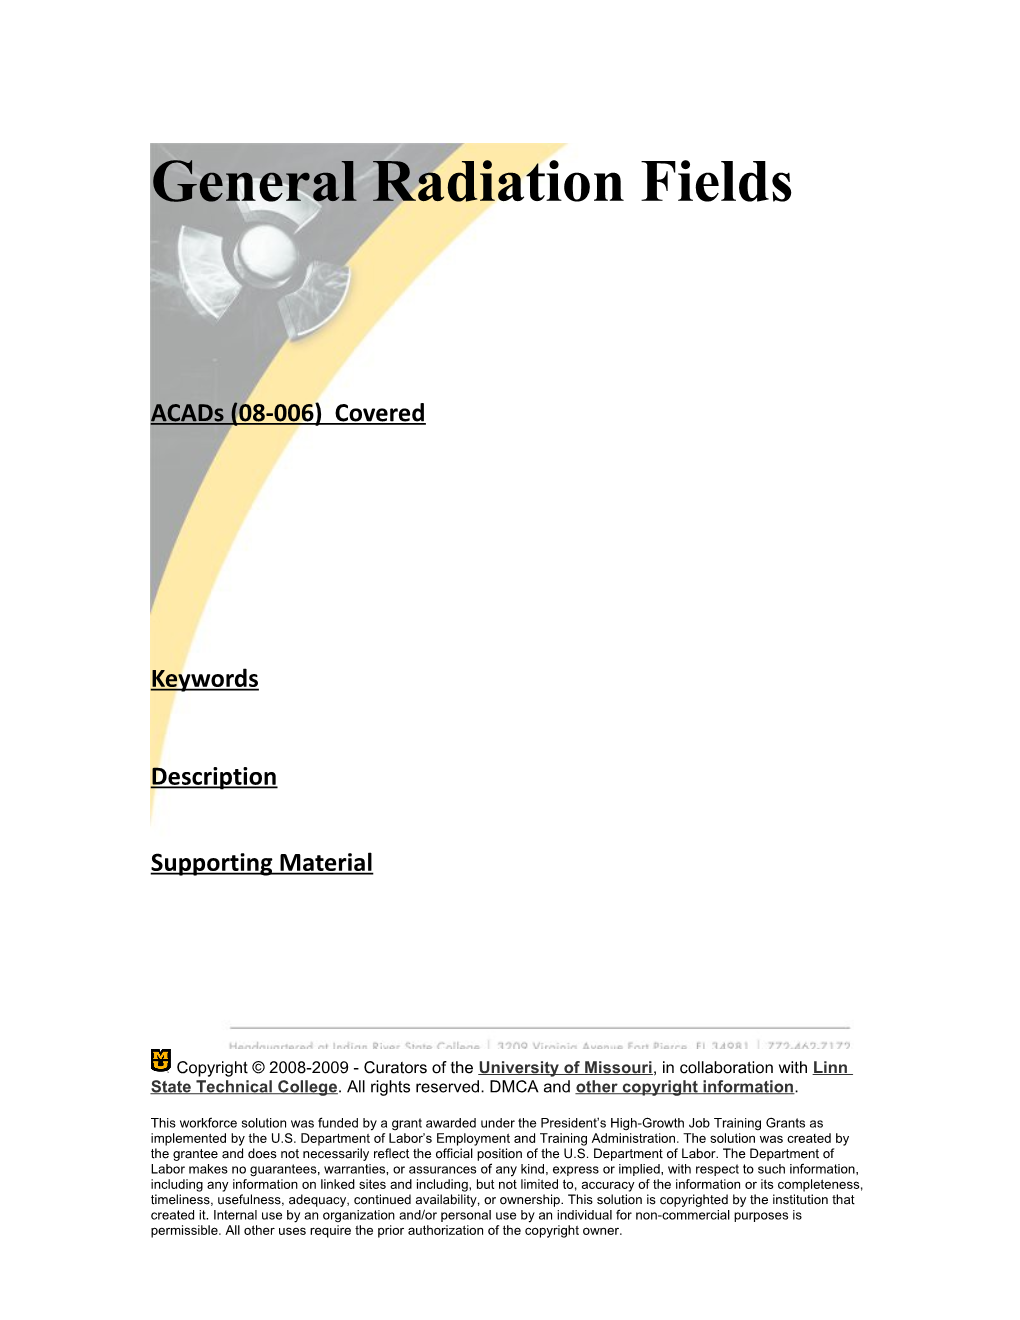 Module 2: General Radiation Fields